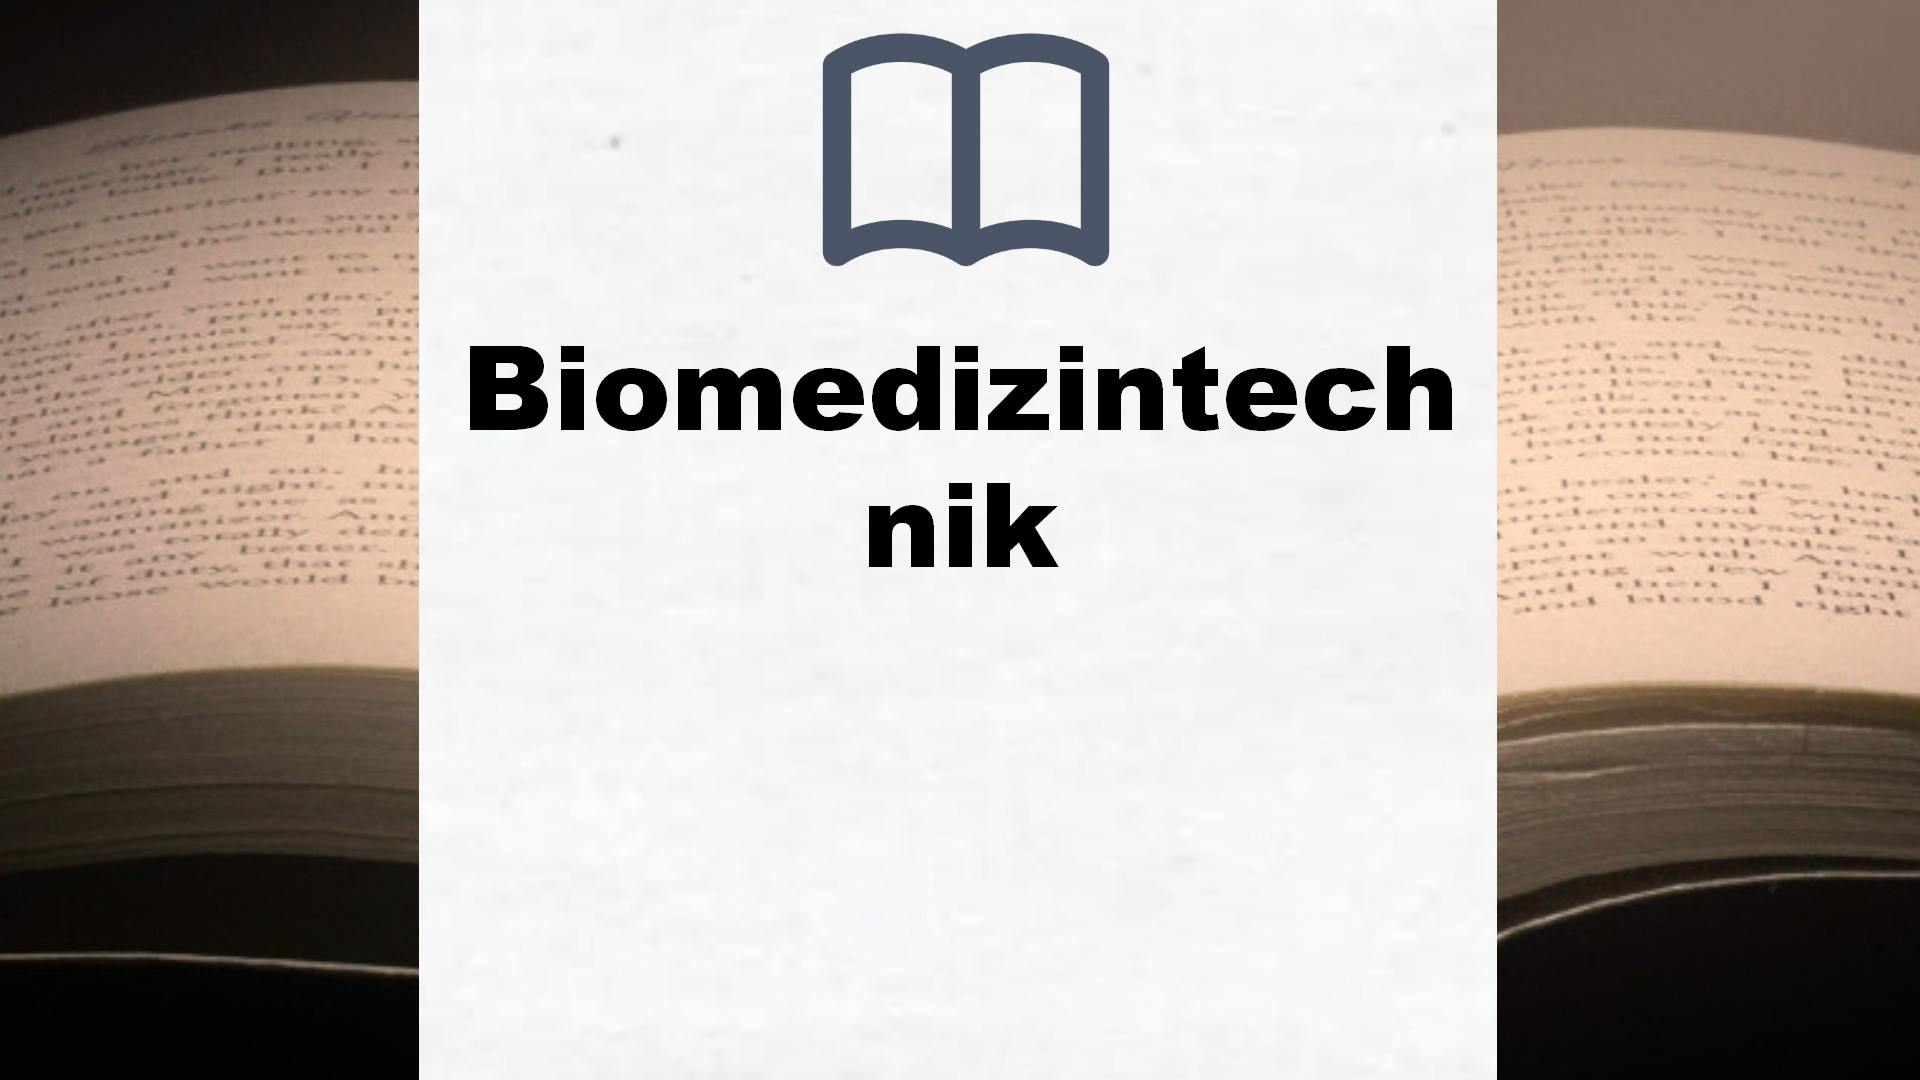 Bücher über Biomedizintechnik